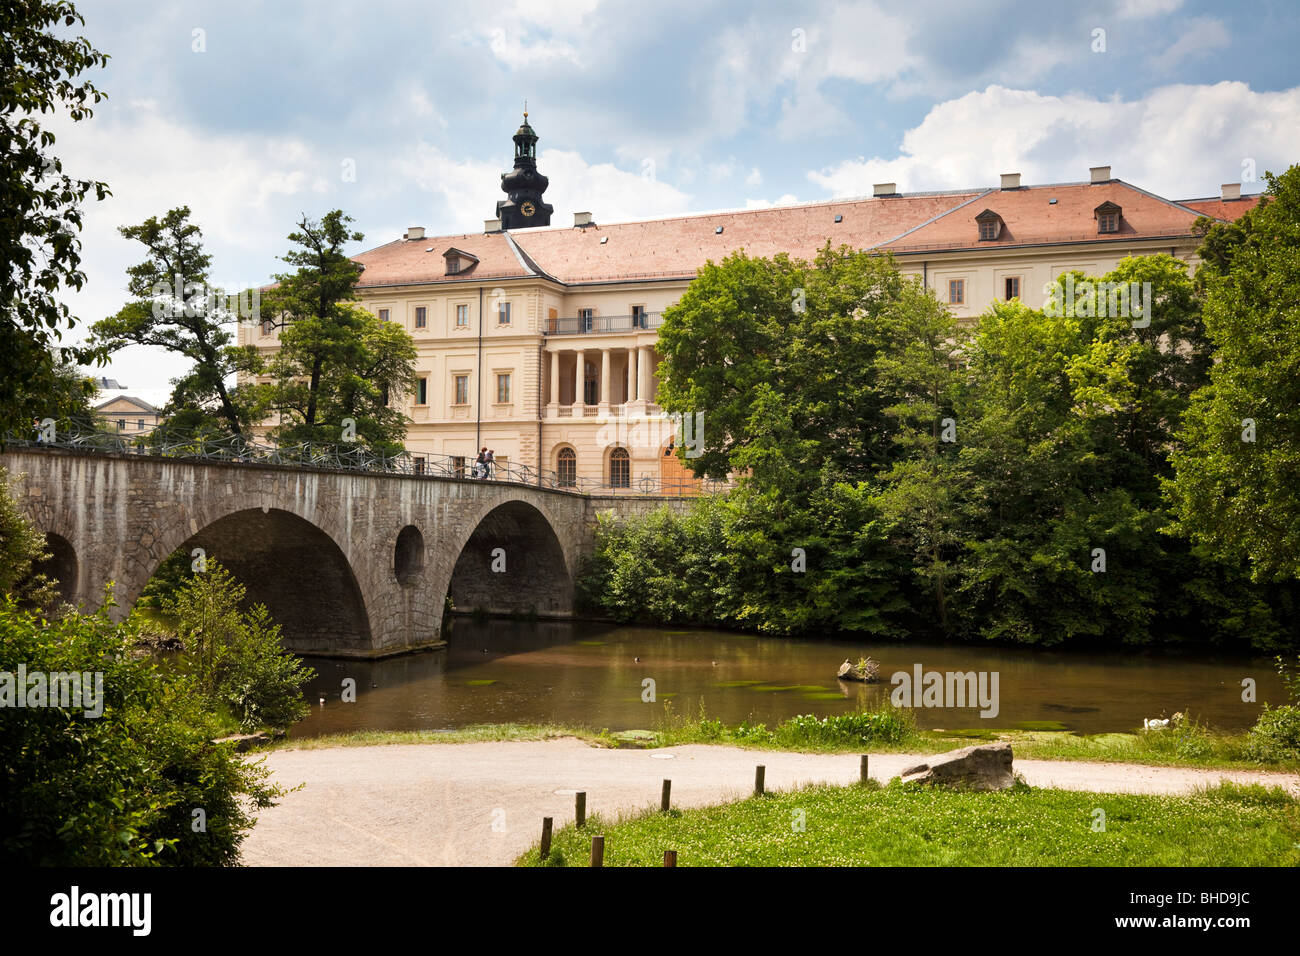 Le palais Schloss Weimar et la rivière Ilm, Allemagne, Europe - UNESCO World Heritage site Banque D'Images